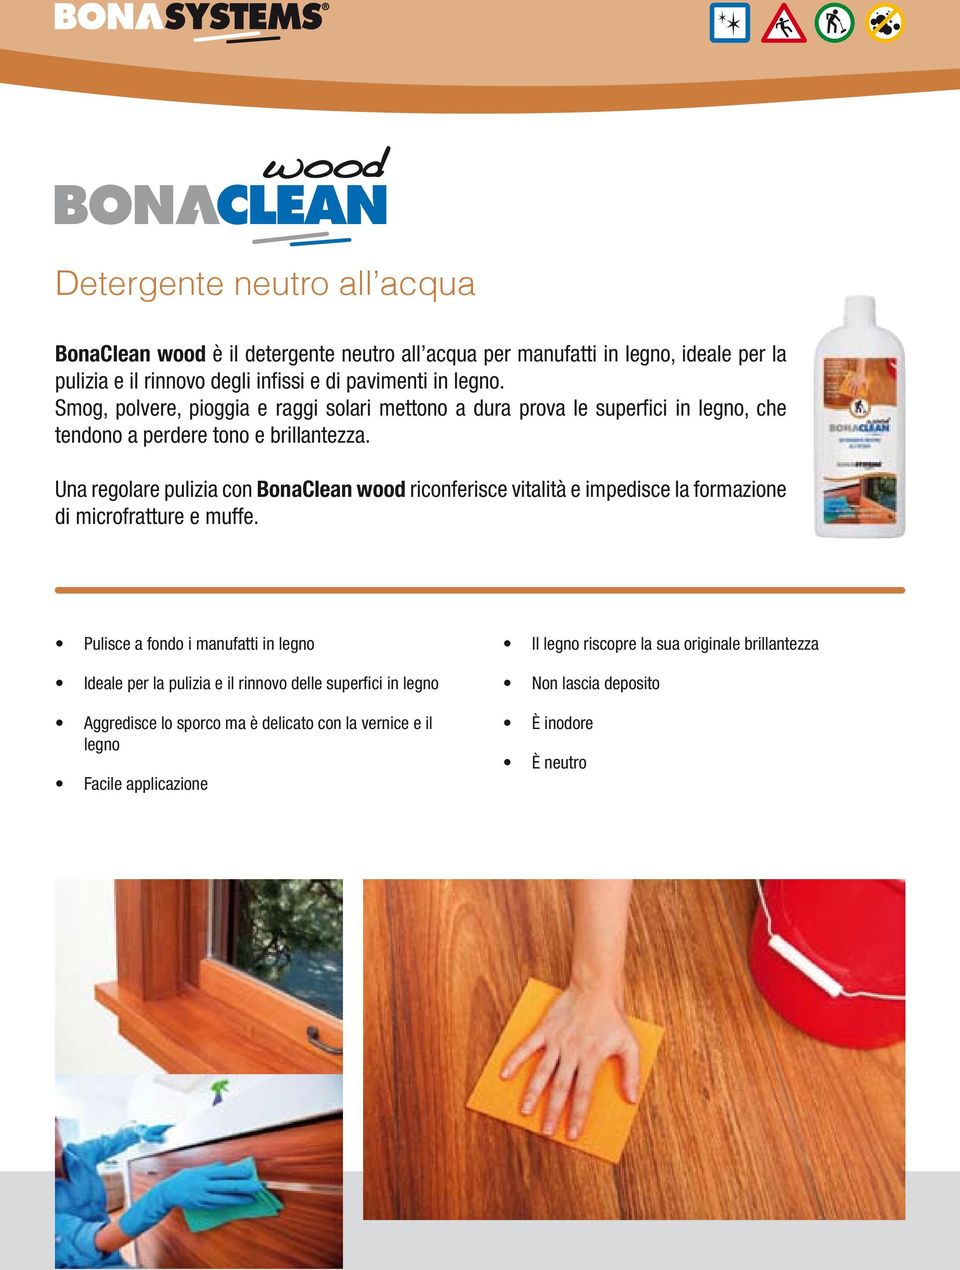 Una regolare pulizia con BonaClean wood riconferisce vitalità e impedisce la formazione di microfratture e muffe.